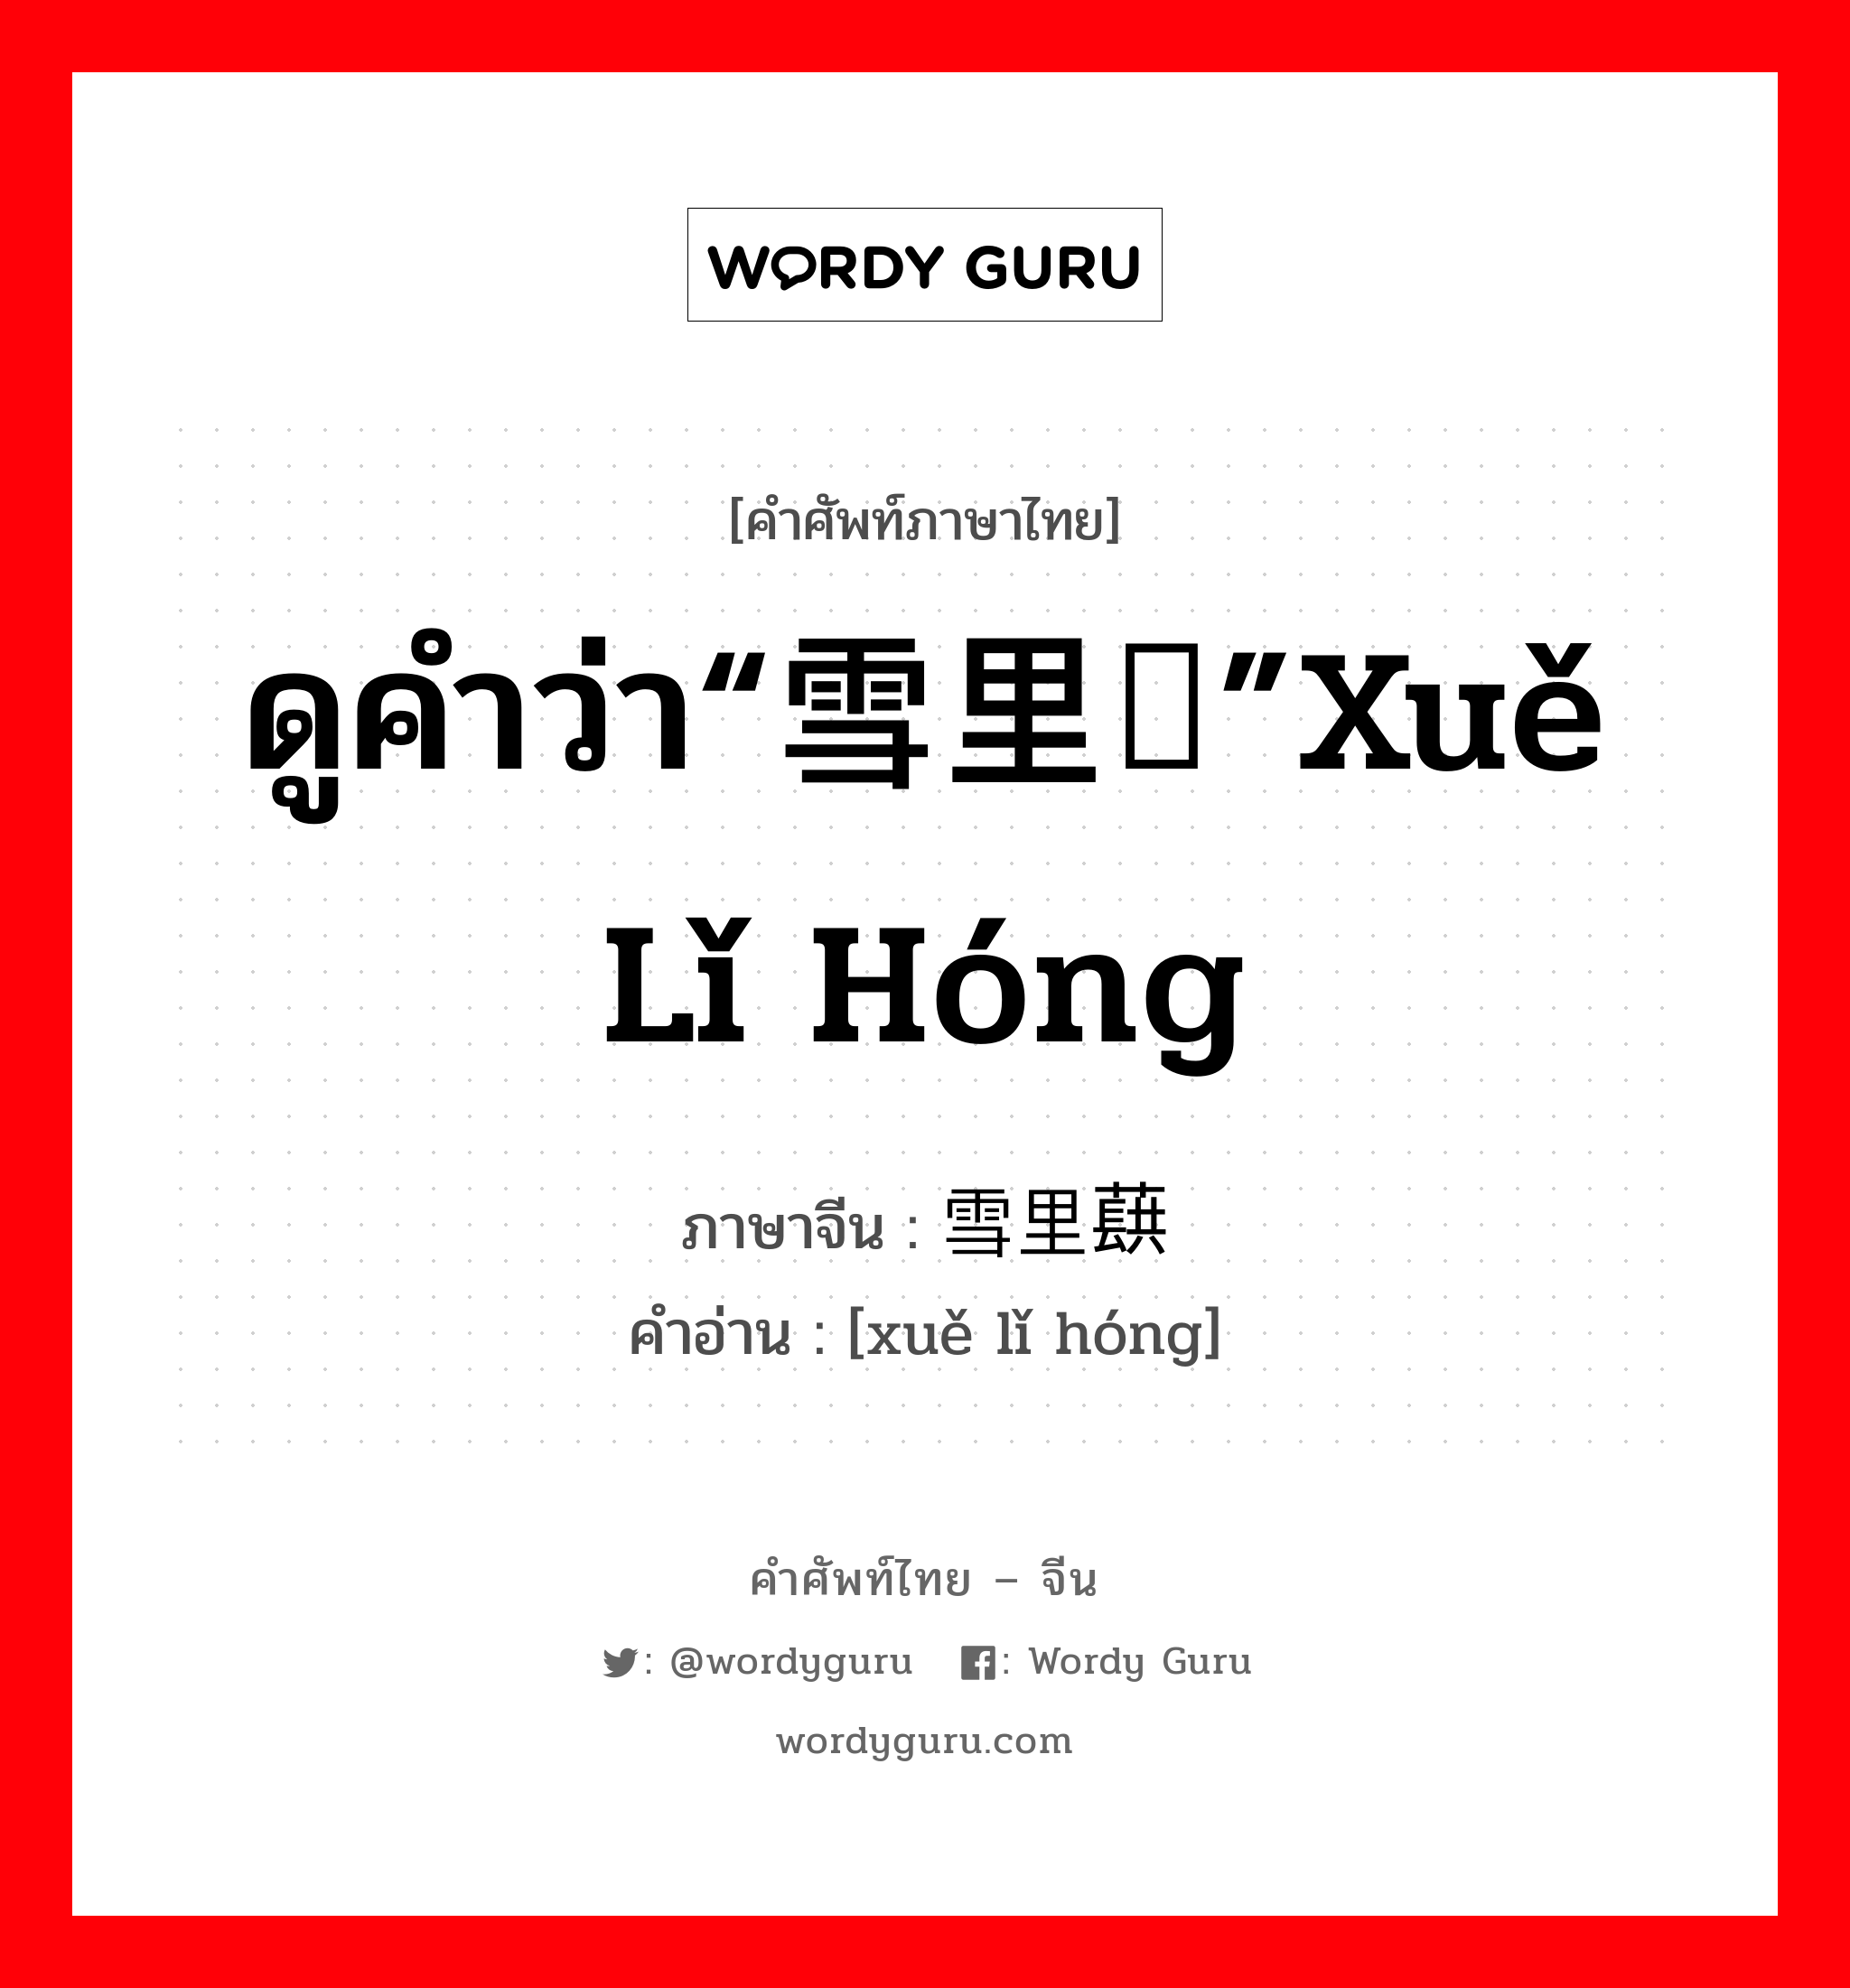 ดูคำว่า“雪里红”xuě lǐ hóng ภาษาจีนคืออะไร, คำศัพท์ภาษาไทย - จีน ดูคำว่า“雪里红”xuě lǐ hóng ภาษาจีน 雪里蕻 คำอ่าน [xuě lǐ hóng]